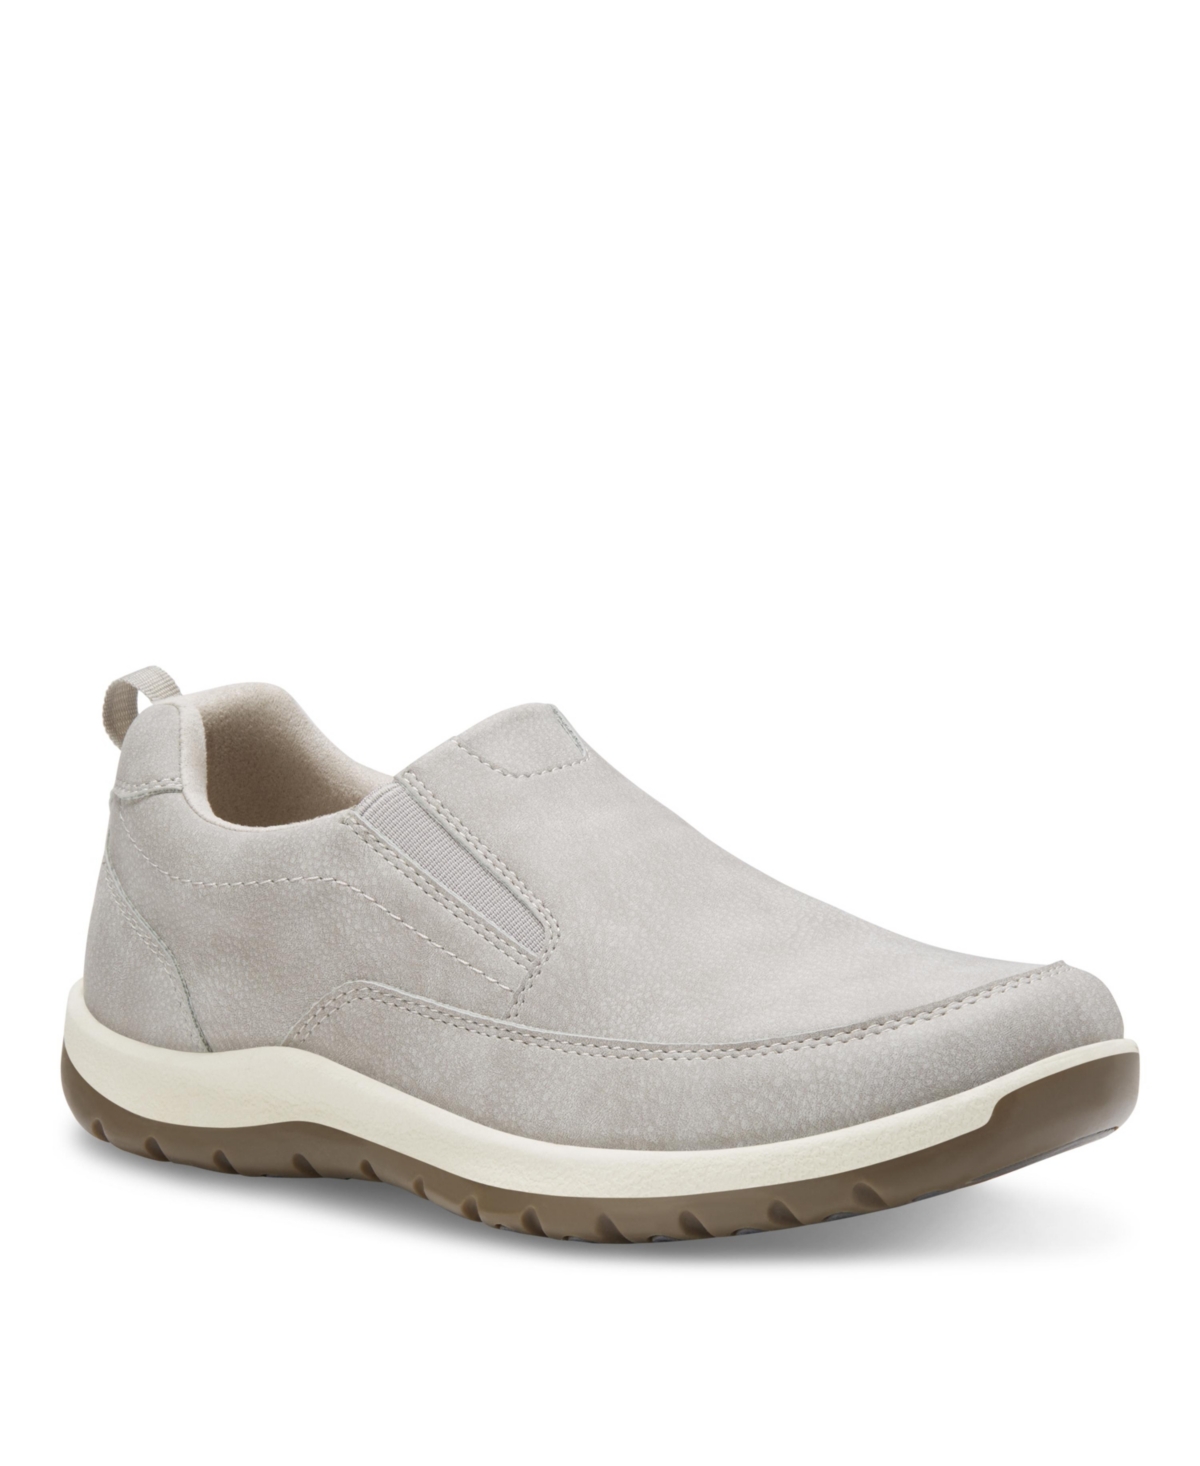 Men's Spencer Slip On Shoes - Light Gray